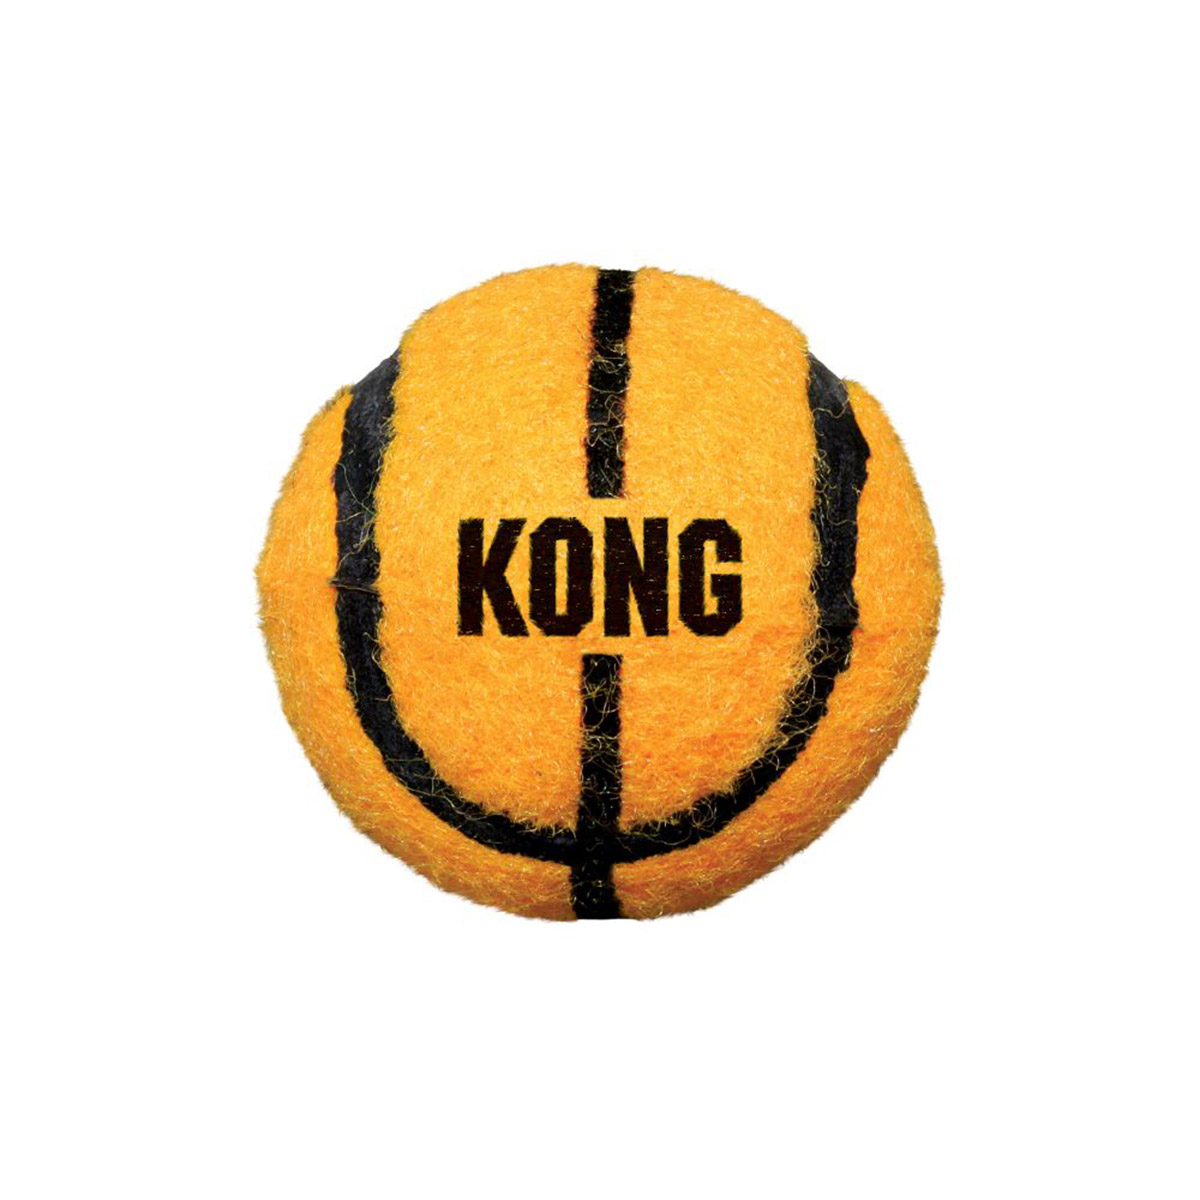 KONG sportovní míčky (3 ks v balení)